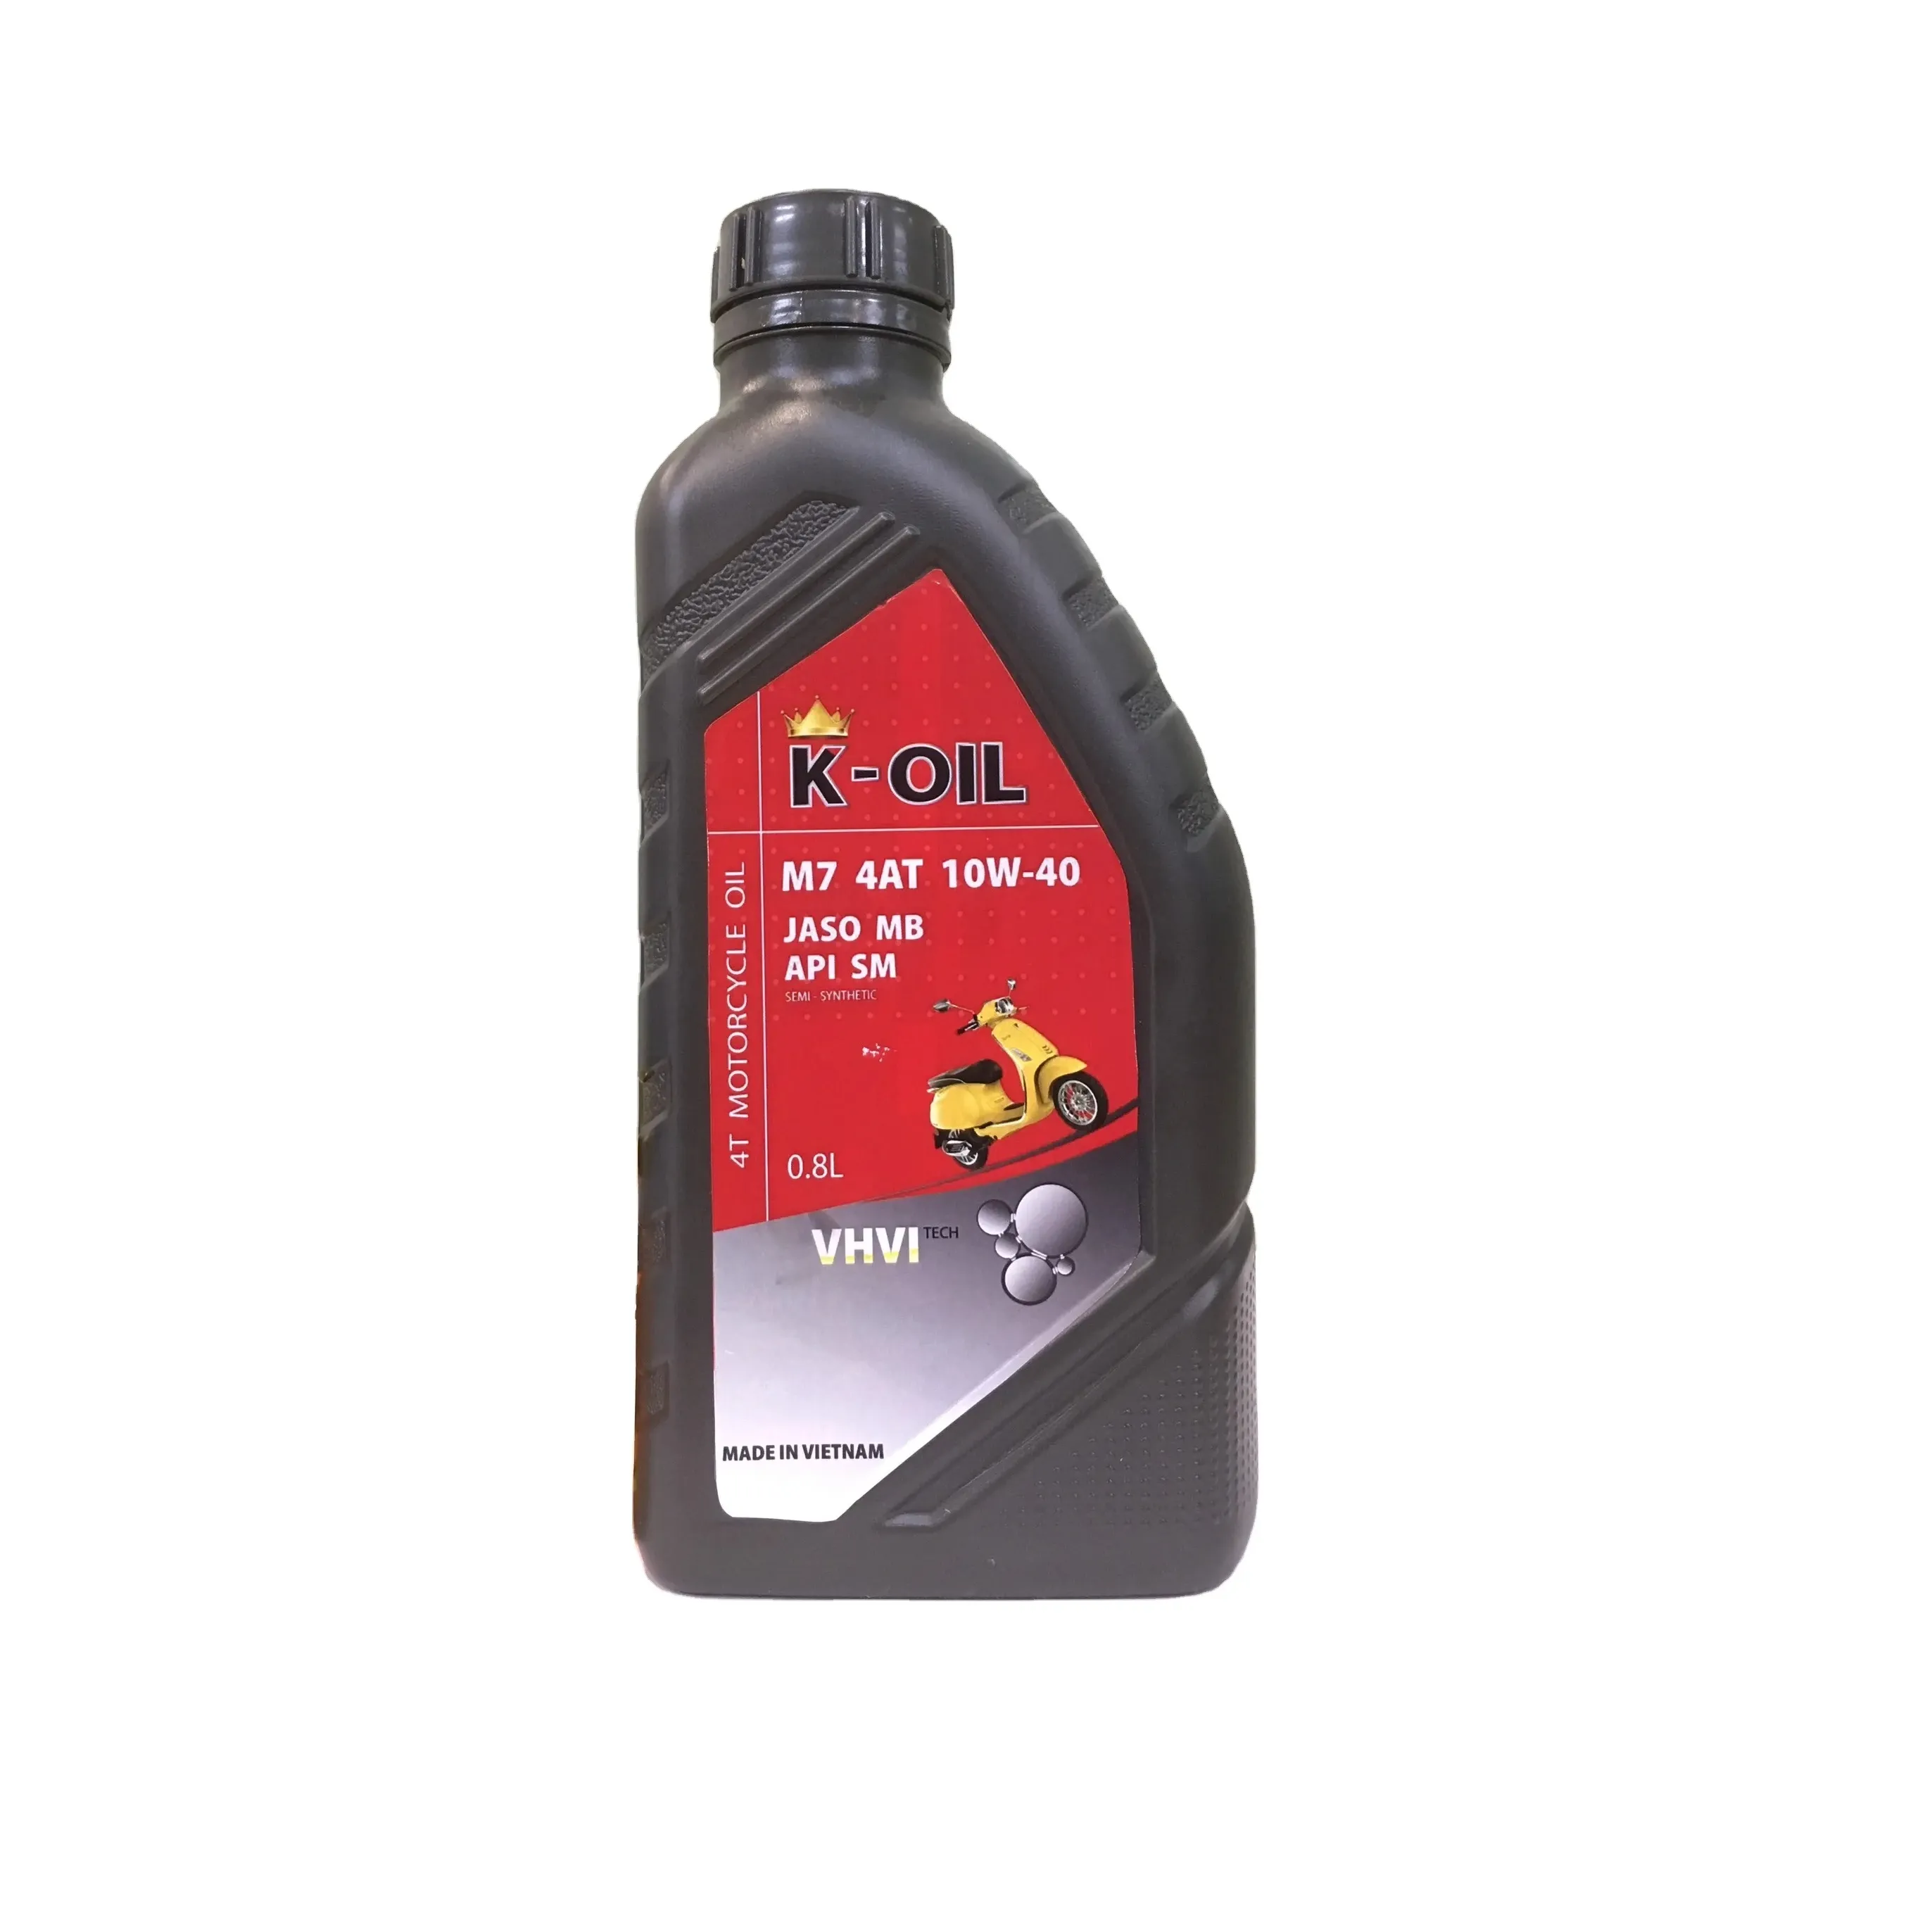 Fábrica en Vietnam K-Oil M7 4AT aceite de motor API SM JASO MB 10W-40 Transferencia de potencia máxima aceite de motor altamente recomendado